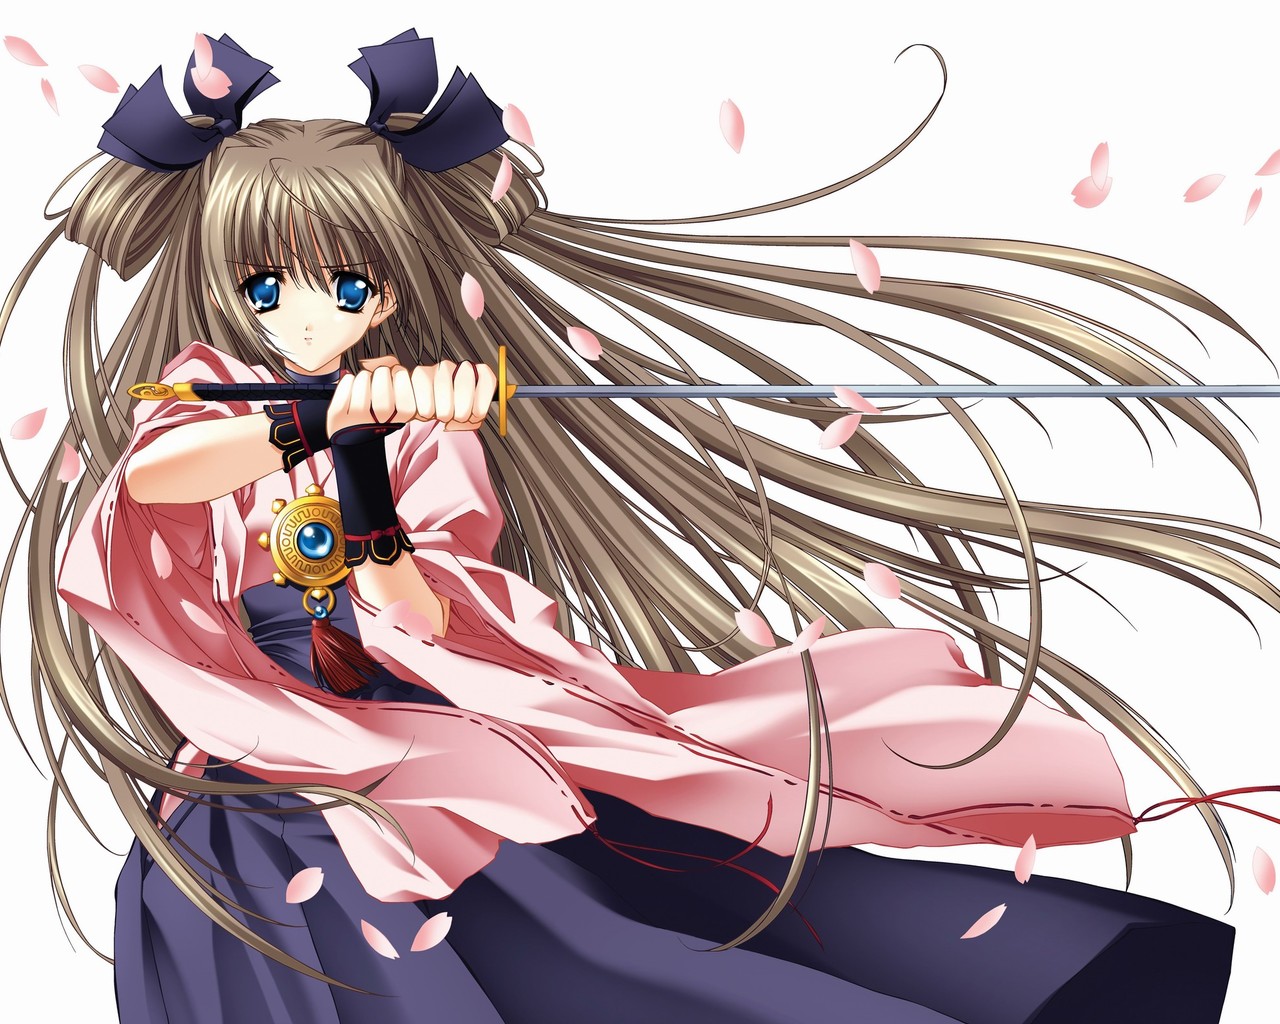 Fondos de Pantalla Espadas Kimono Pelo Anime Chicas descargar imagenes